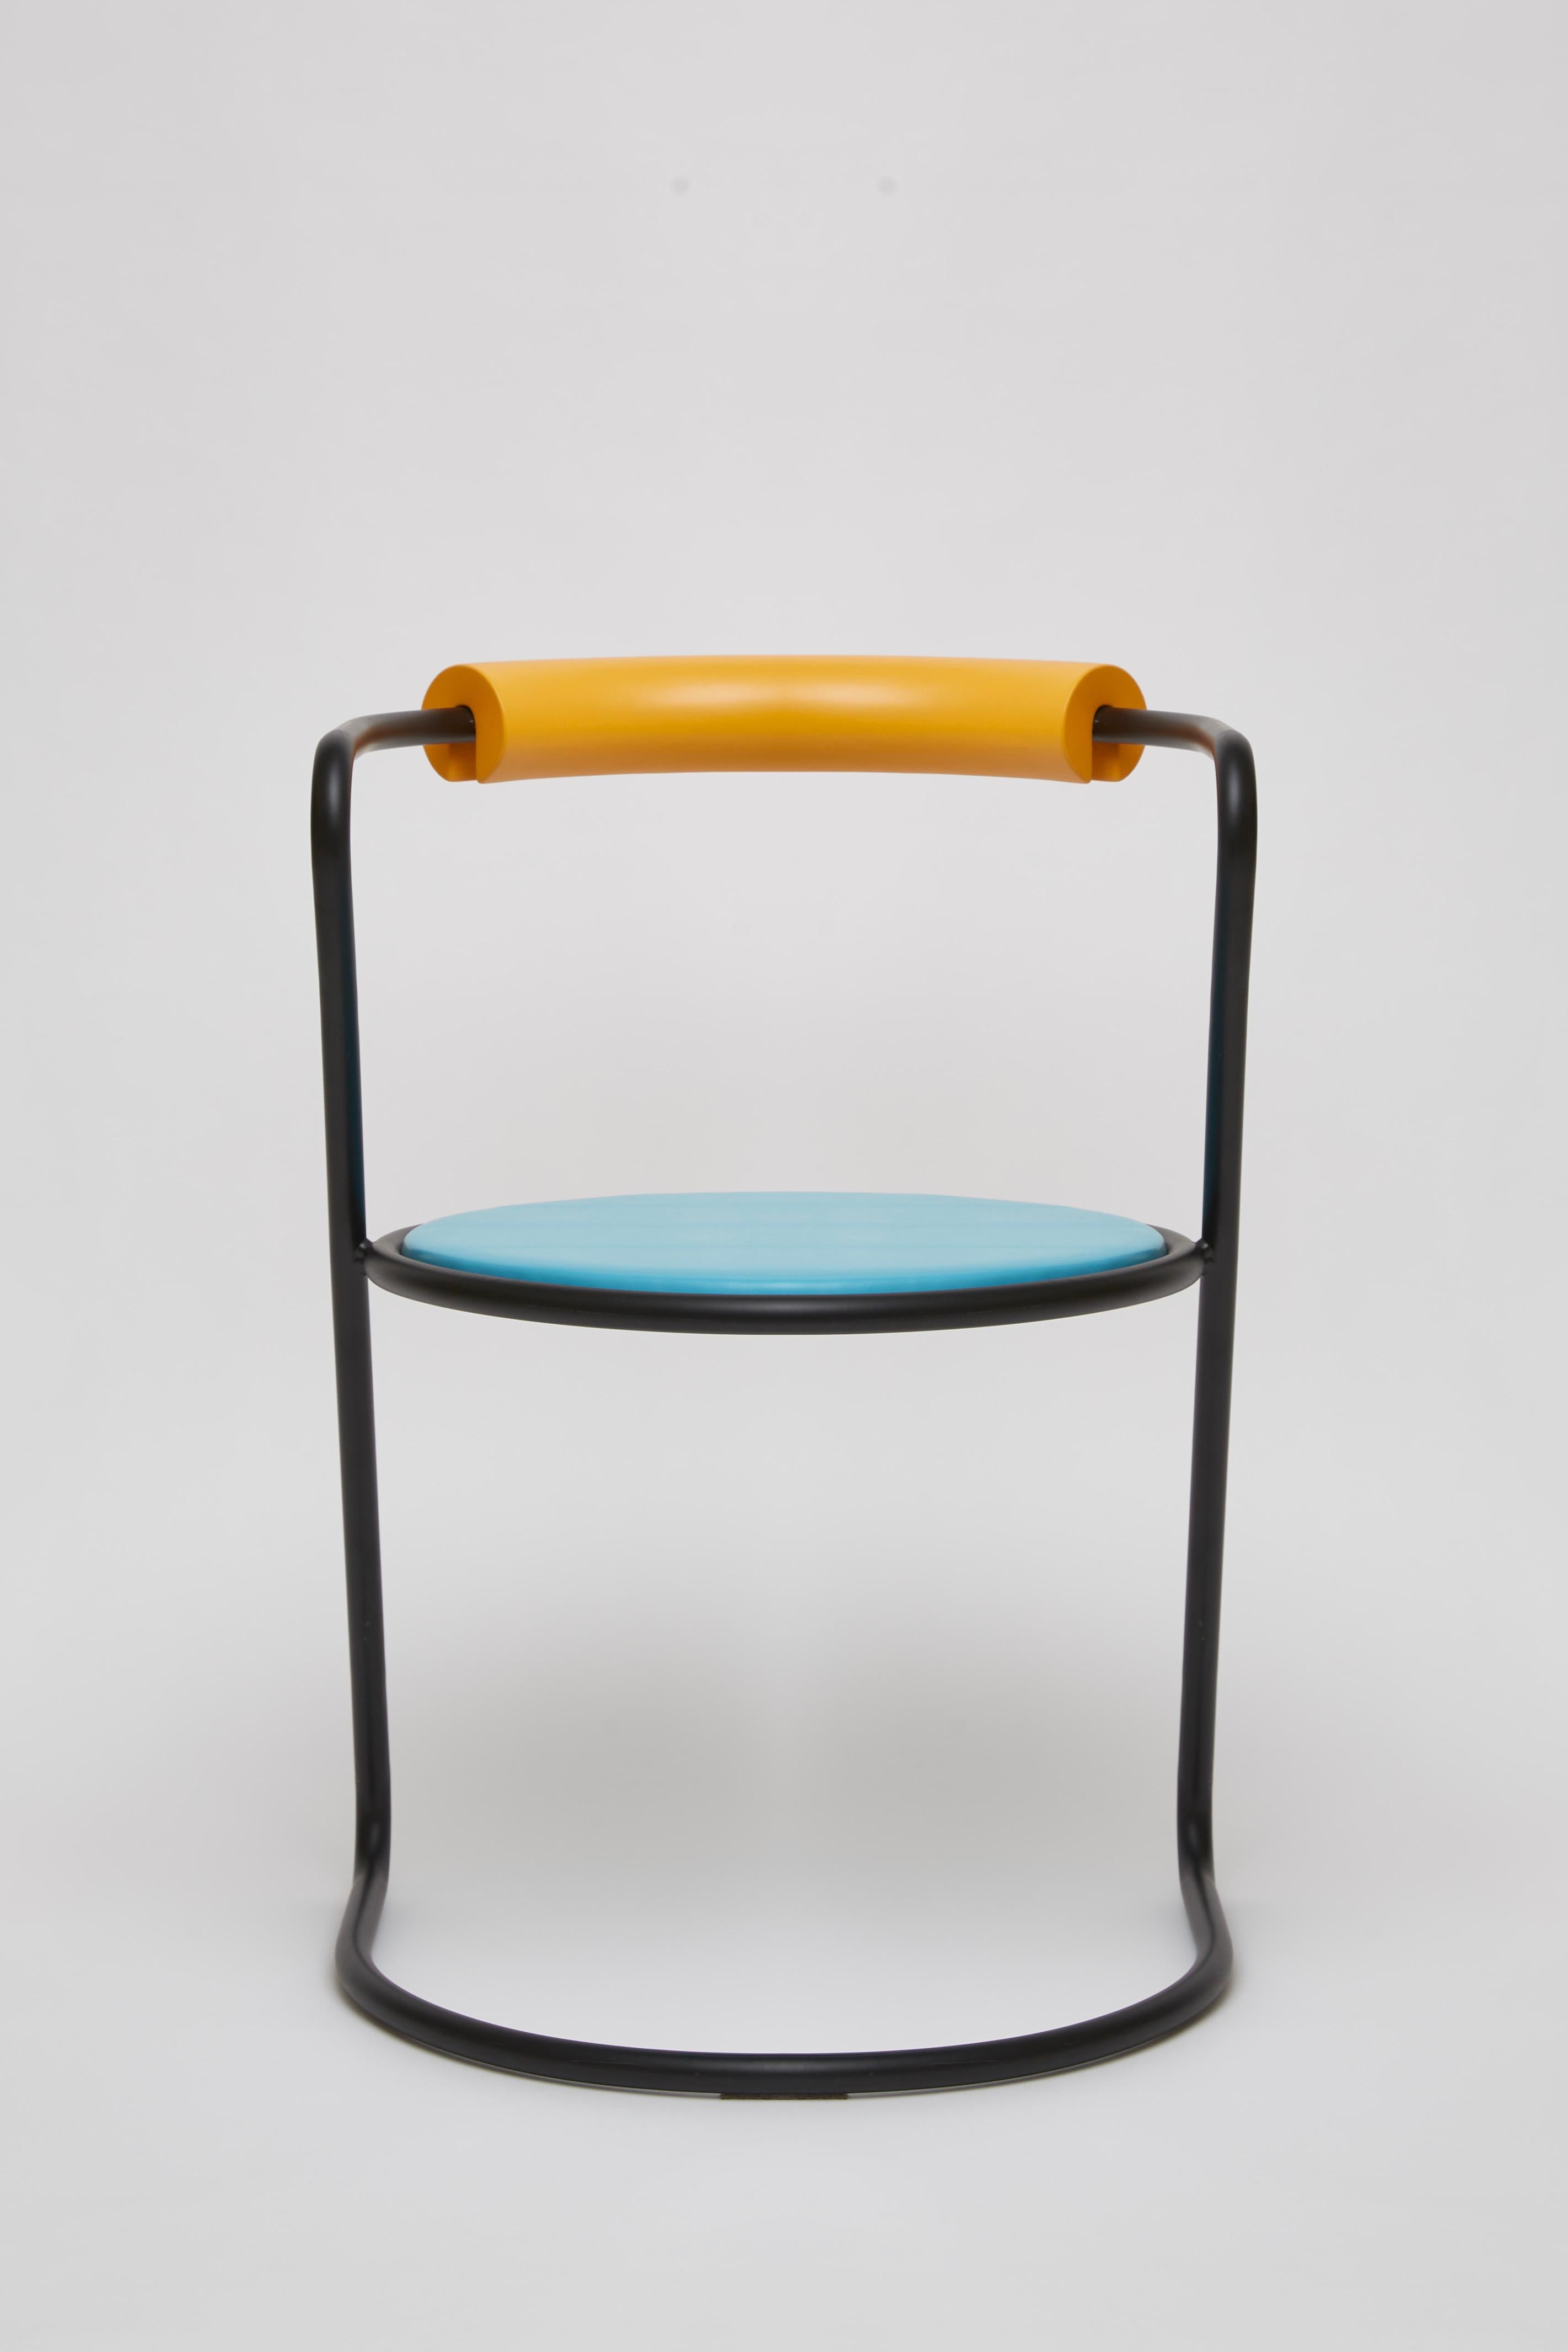 Other Z-Disk Chair, Black, Orange & Light Blue For Sale